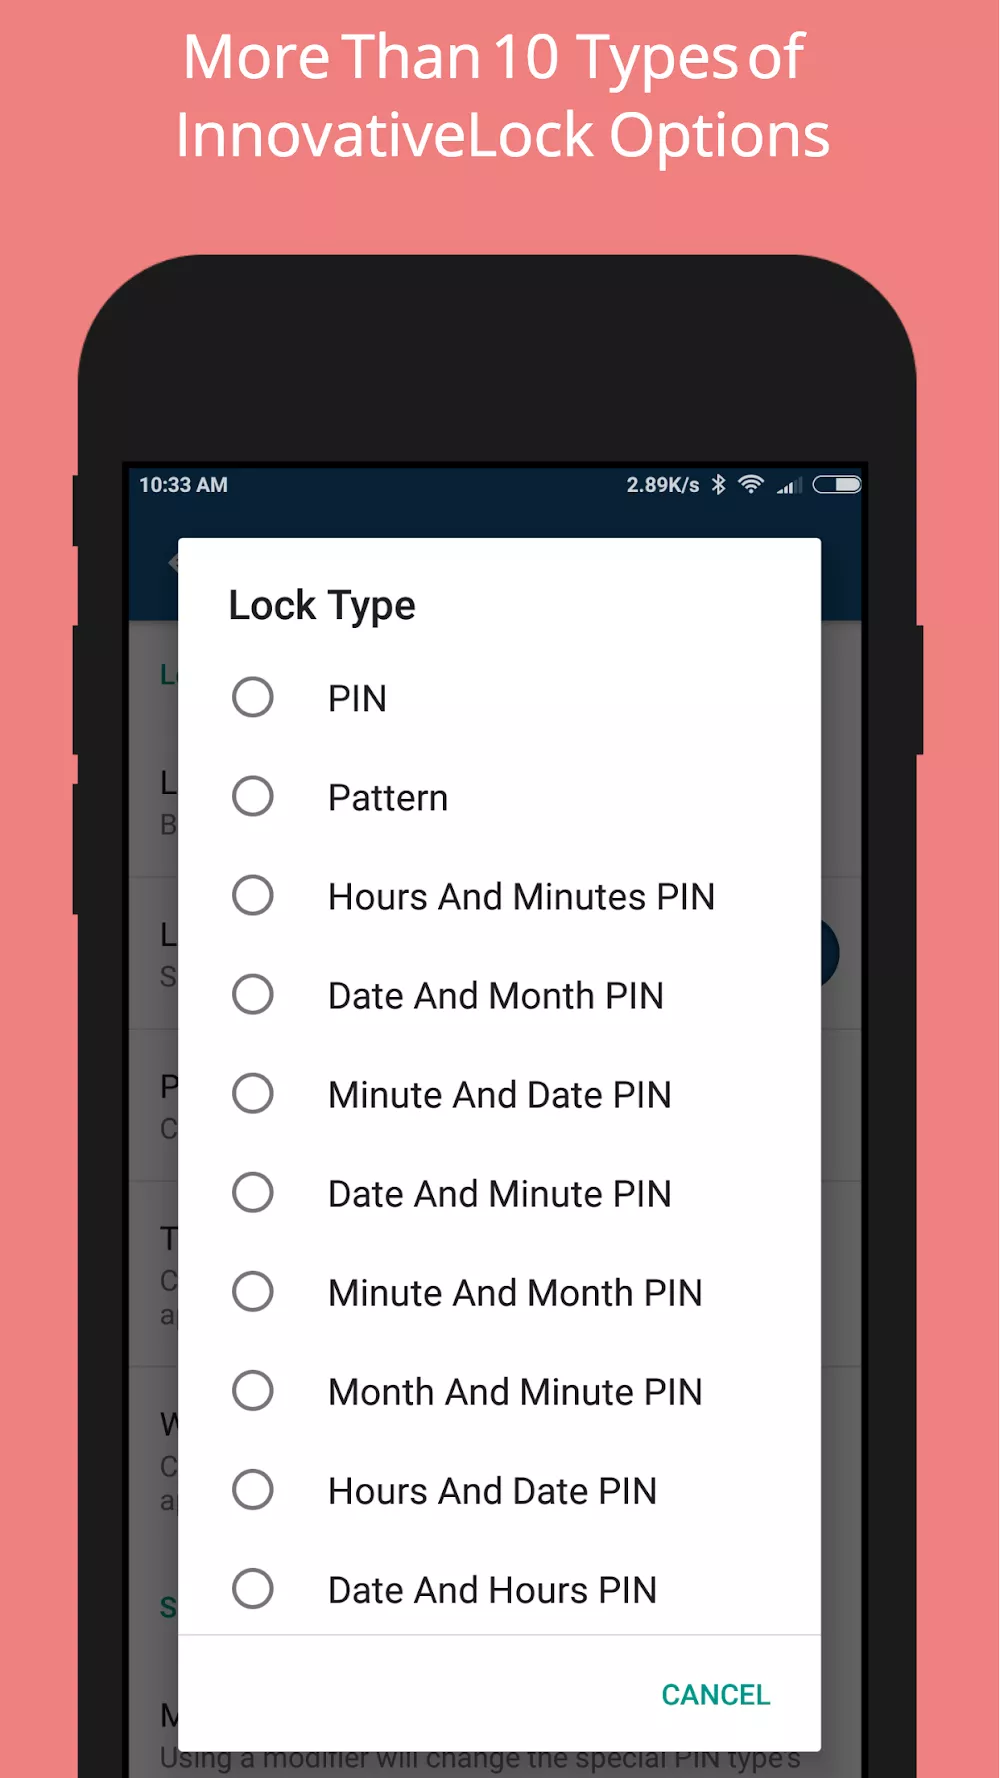 Ultra Lock – App Lock & Vault